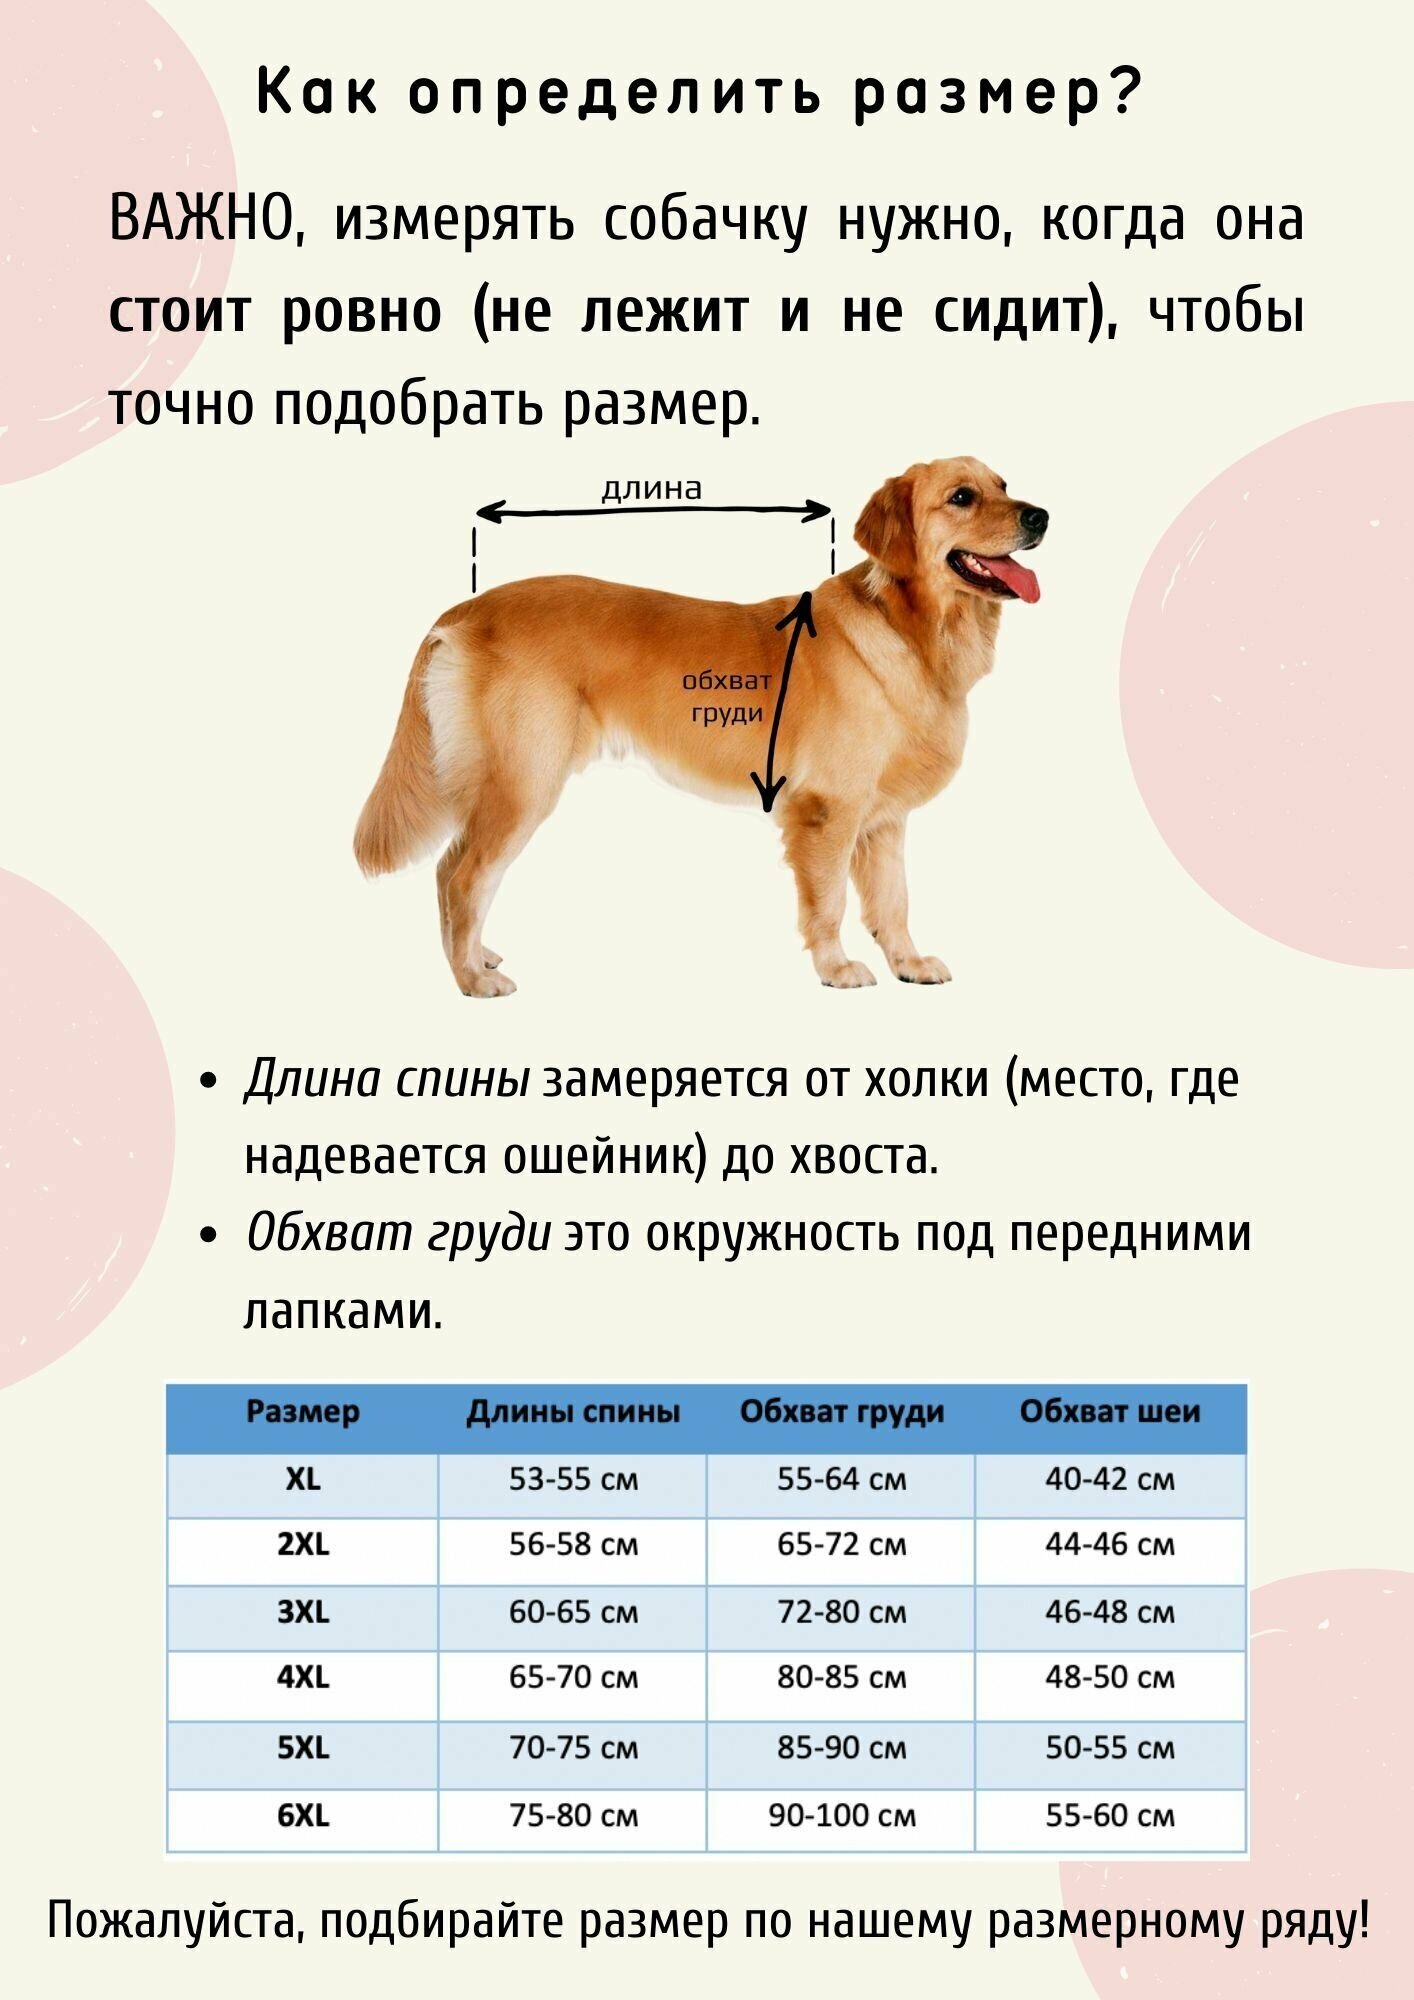 Дождевик для собак средних и крупных пород / Оранжевый / Размер 3XL